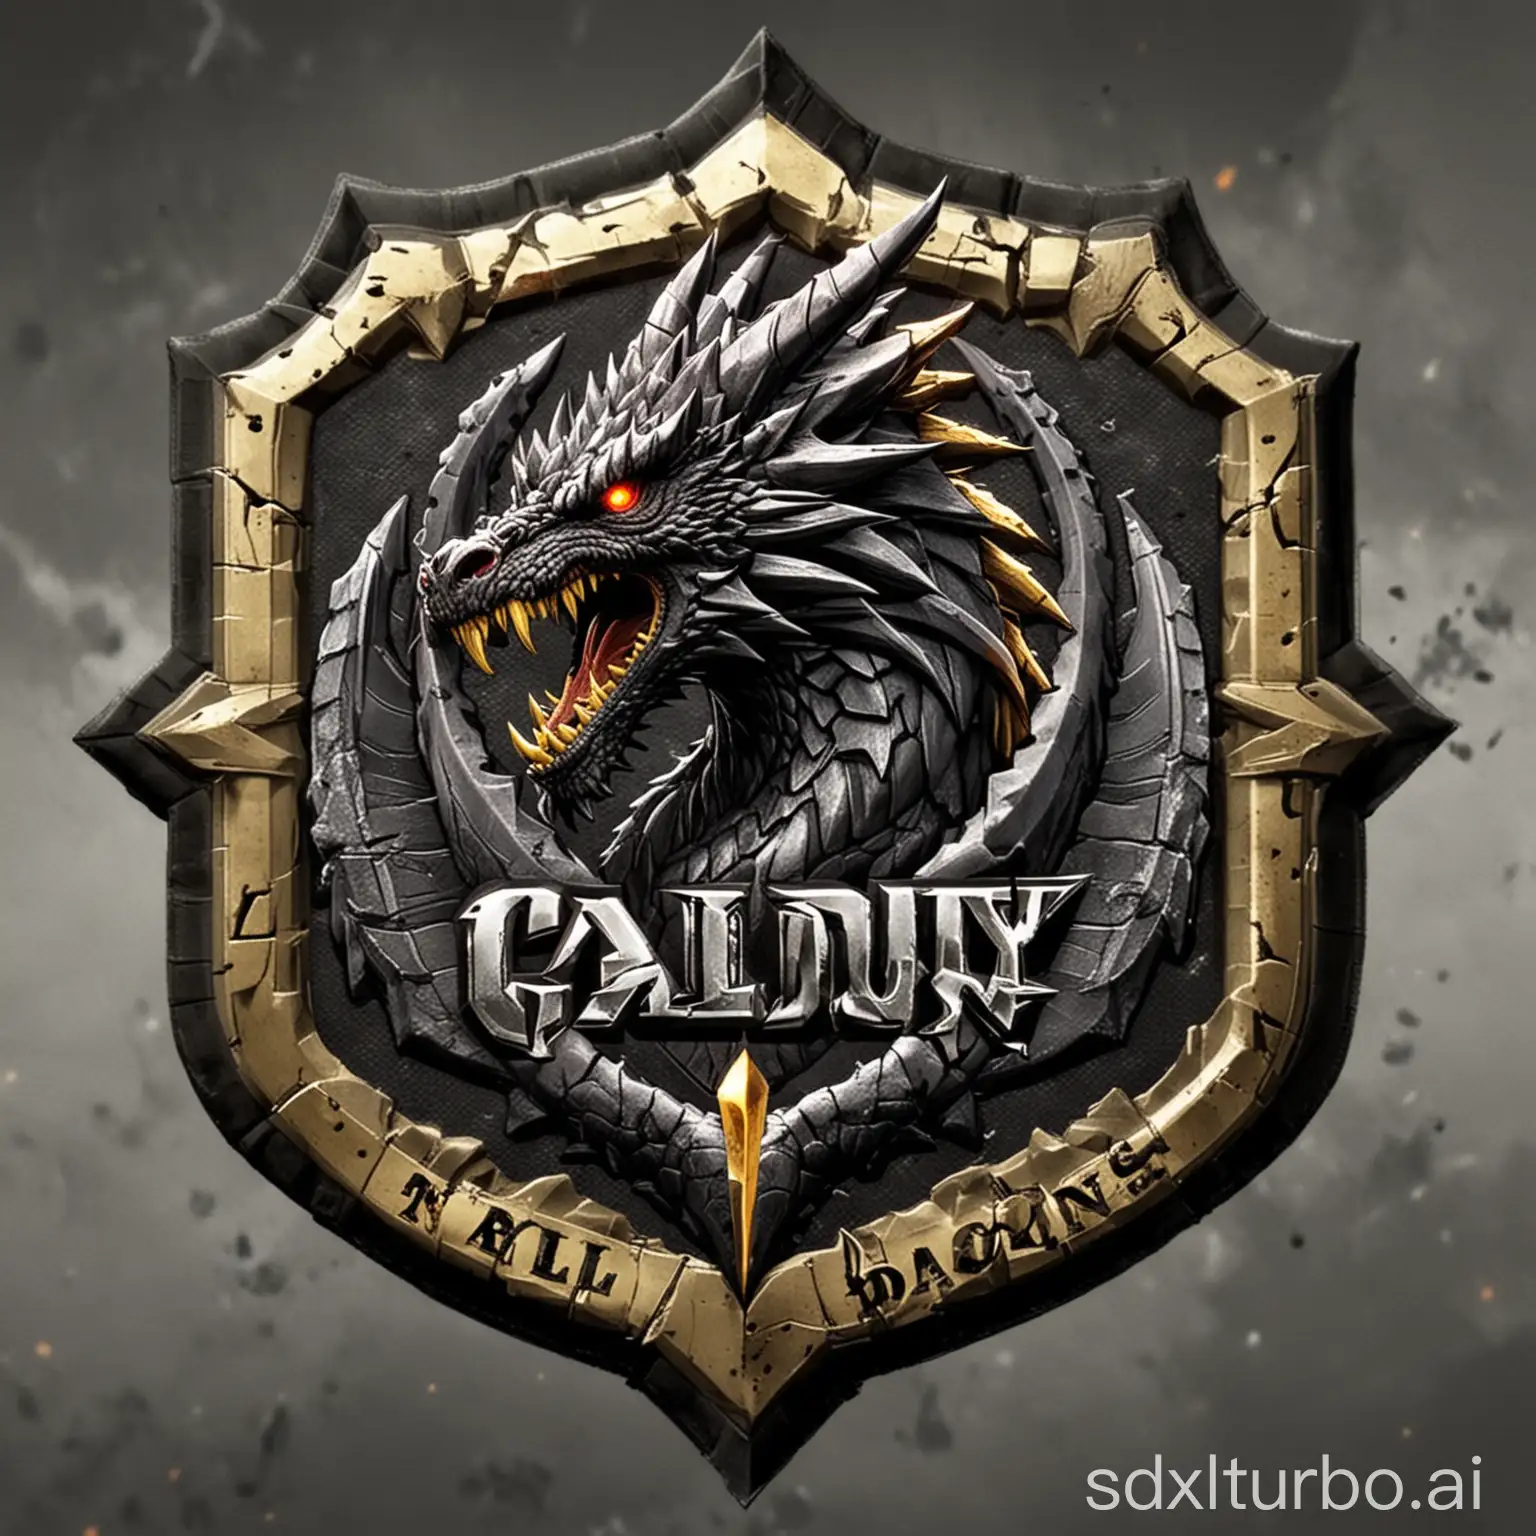 у меня есть клан в игре call of duty mobile под названием dusk & dragons 
Логотип в стиле военной нашивки про драконов с названием клана
